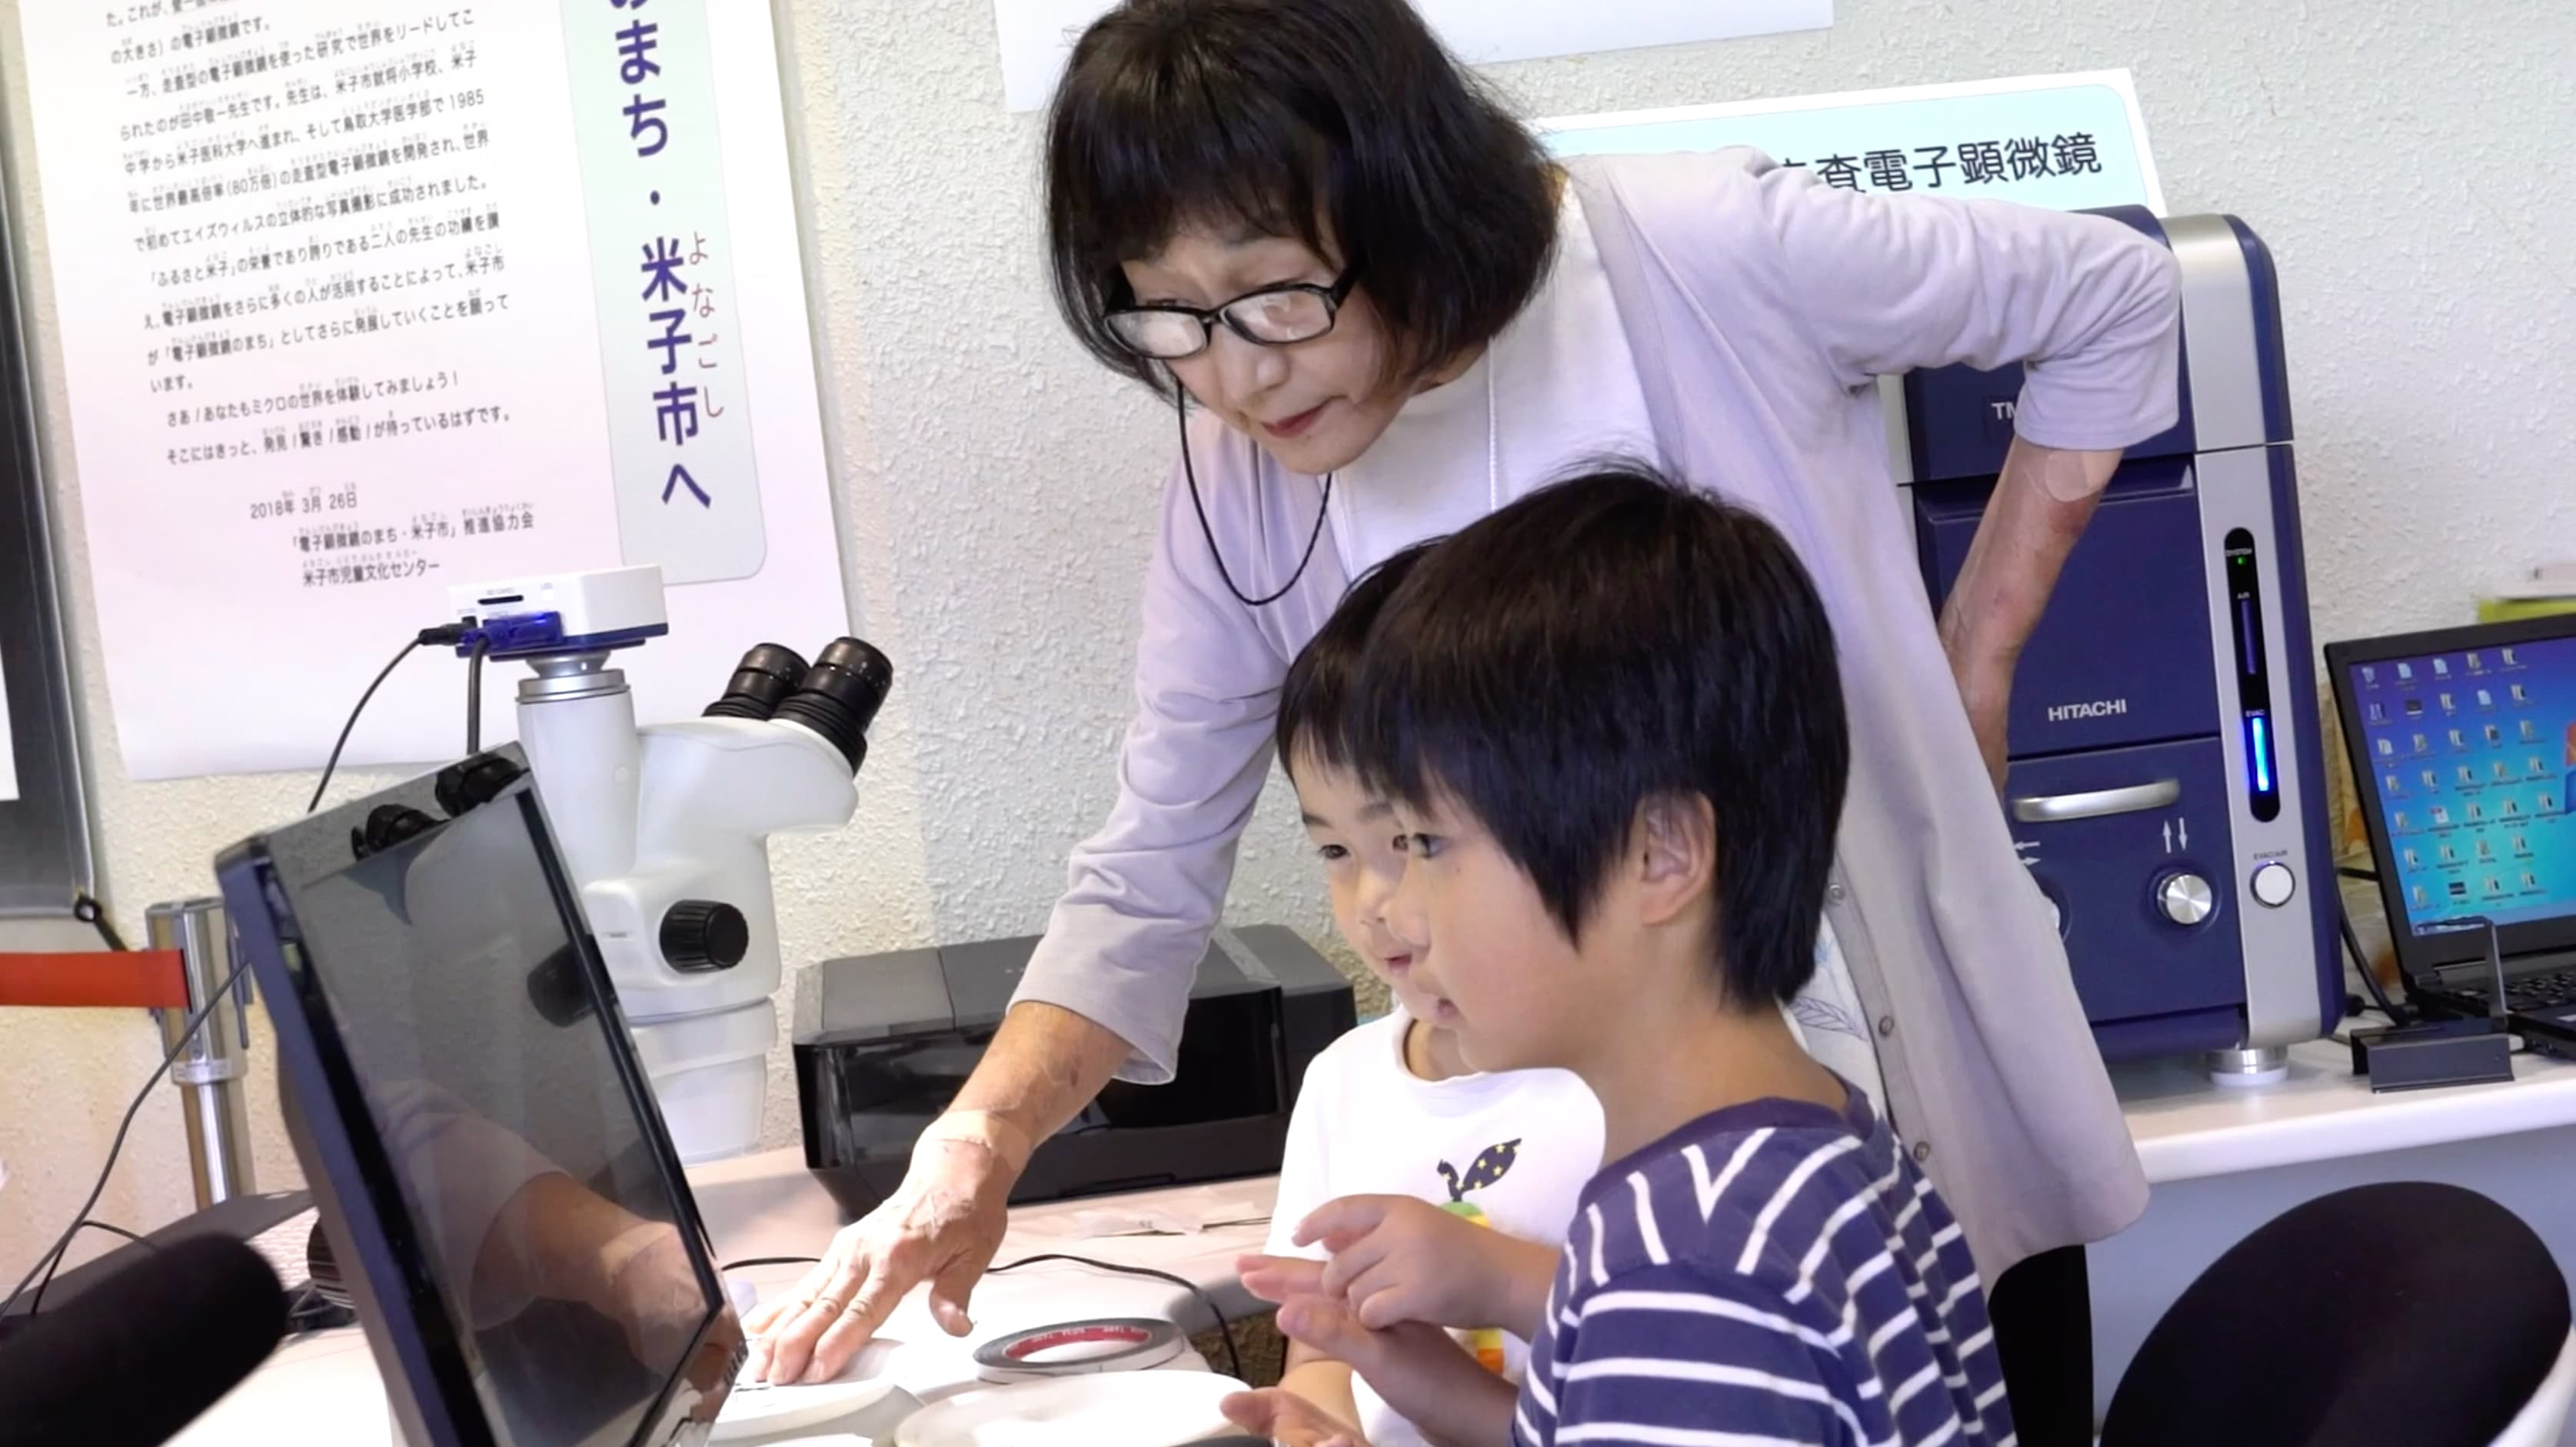 観察手法の指導をする稲賀先生。協力会メンバーの講習を受けたボランティアが交代で子供達のサポートに当たっている。